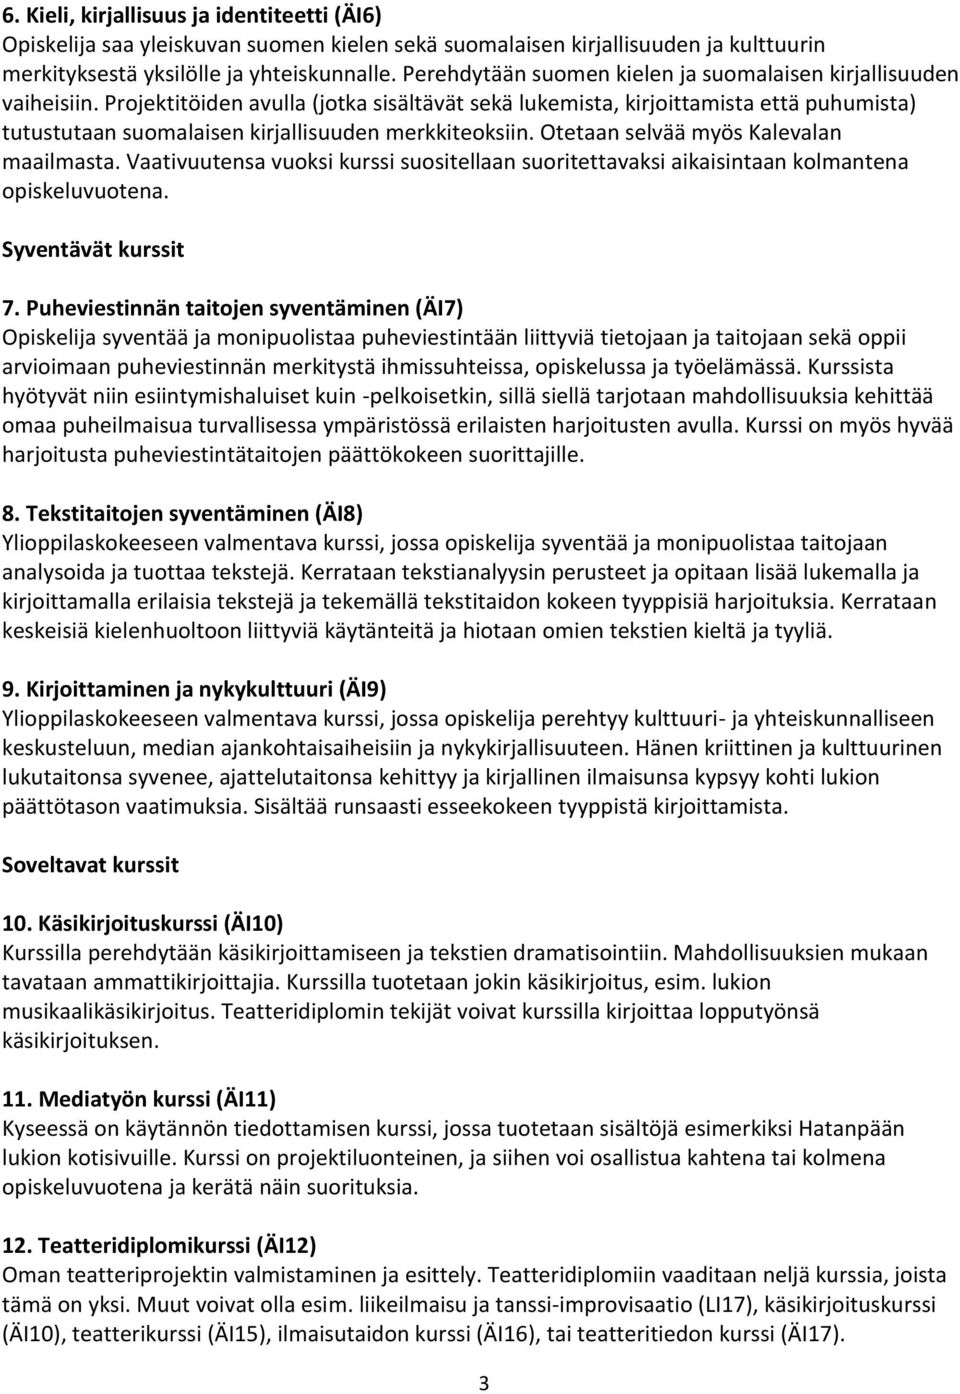 Projektitöiden avulla (jotka sisältävät sekä lukemista, kirjoittamista että puhumista) tutustutaan suomalaisen kirjallisuuden merkkiteoksiin. Otetaan selvää myös Kalevalan maailmasta.